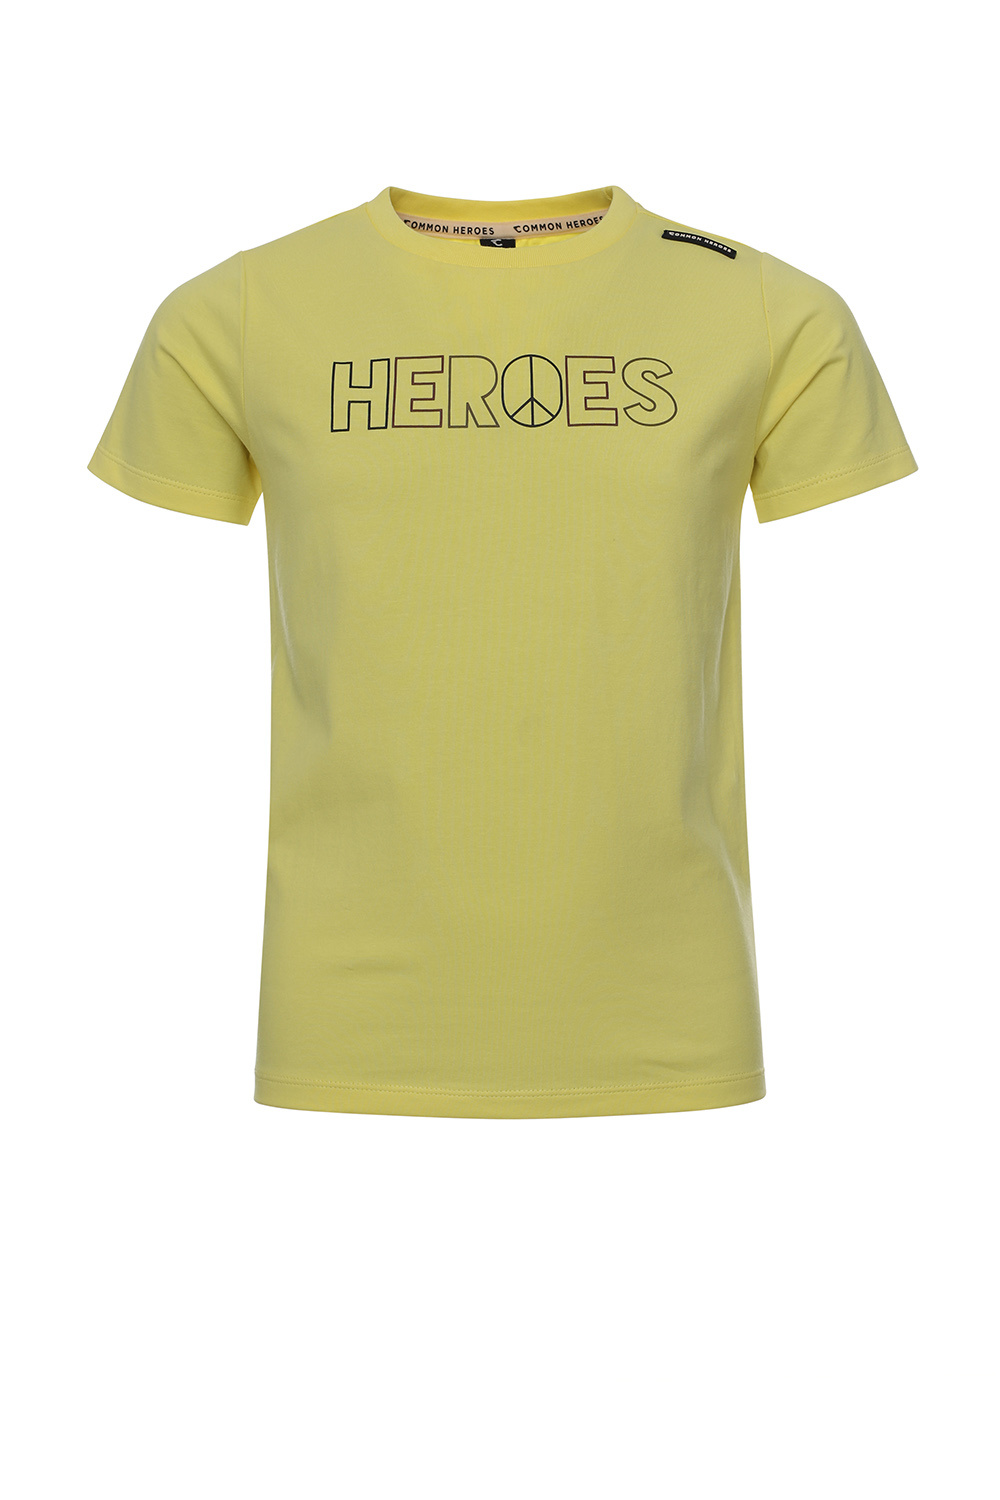 Common Heroes 2311-8416-500 jongens Shirt - Maat 110/116 - Geel van Katoen